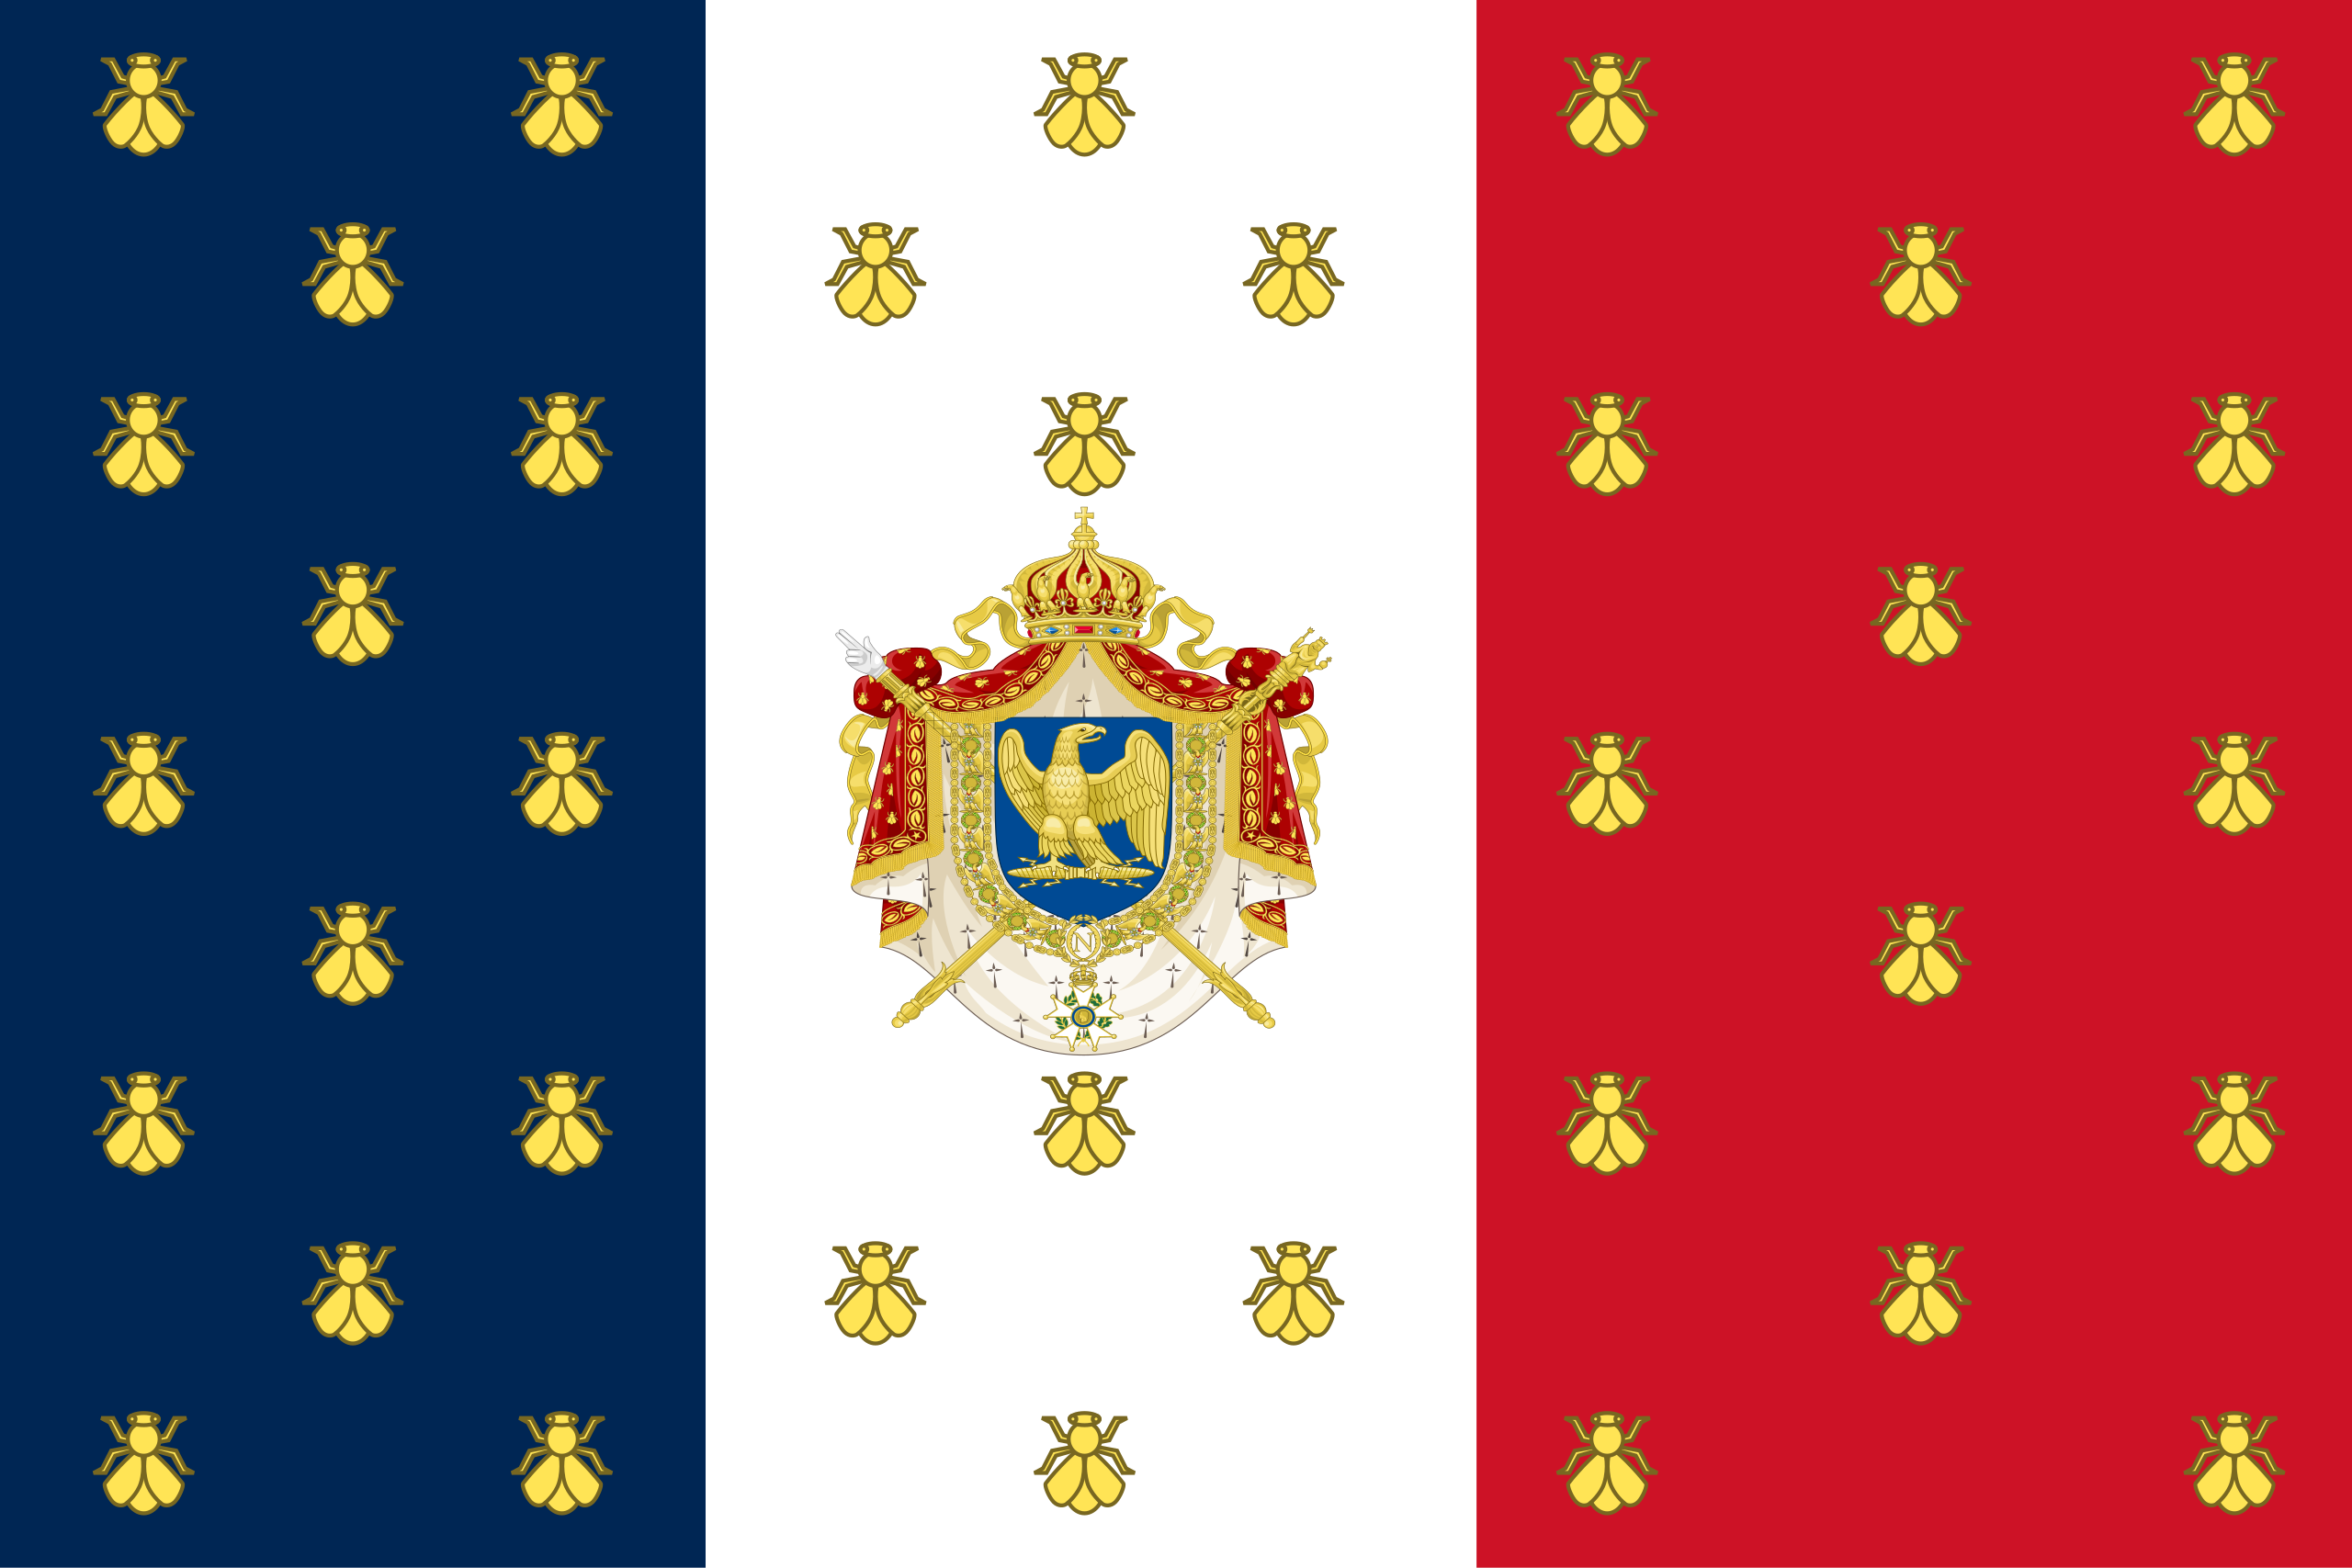 Napoleon III - Wikipedia